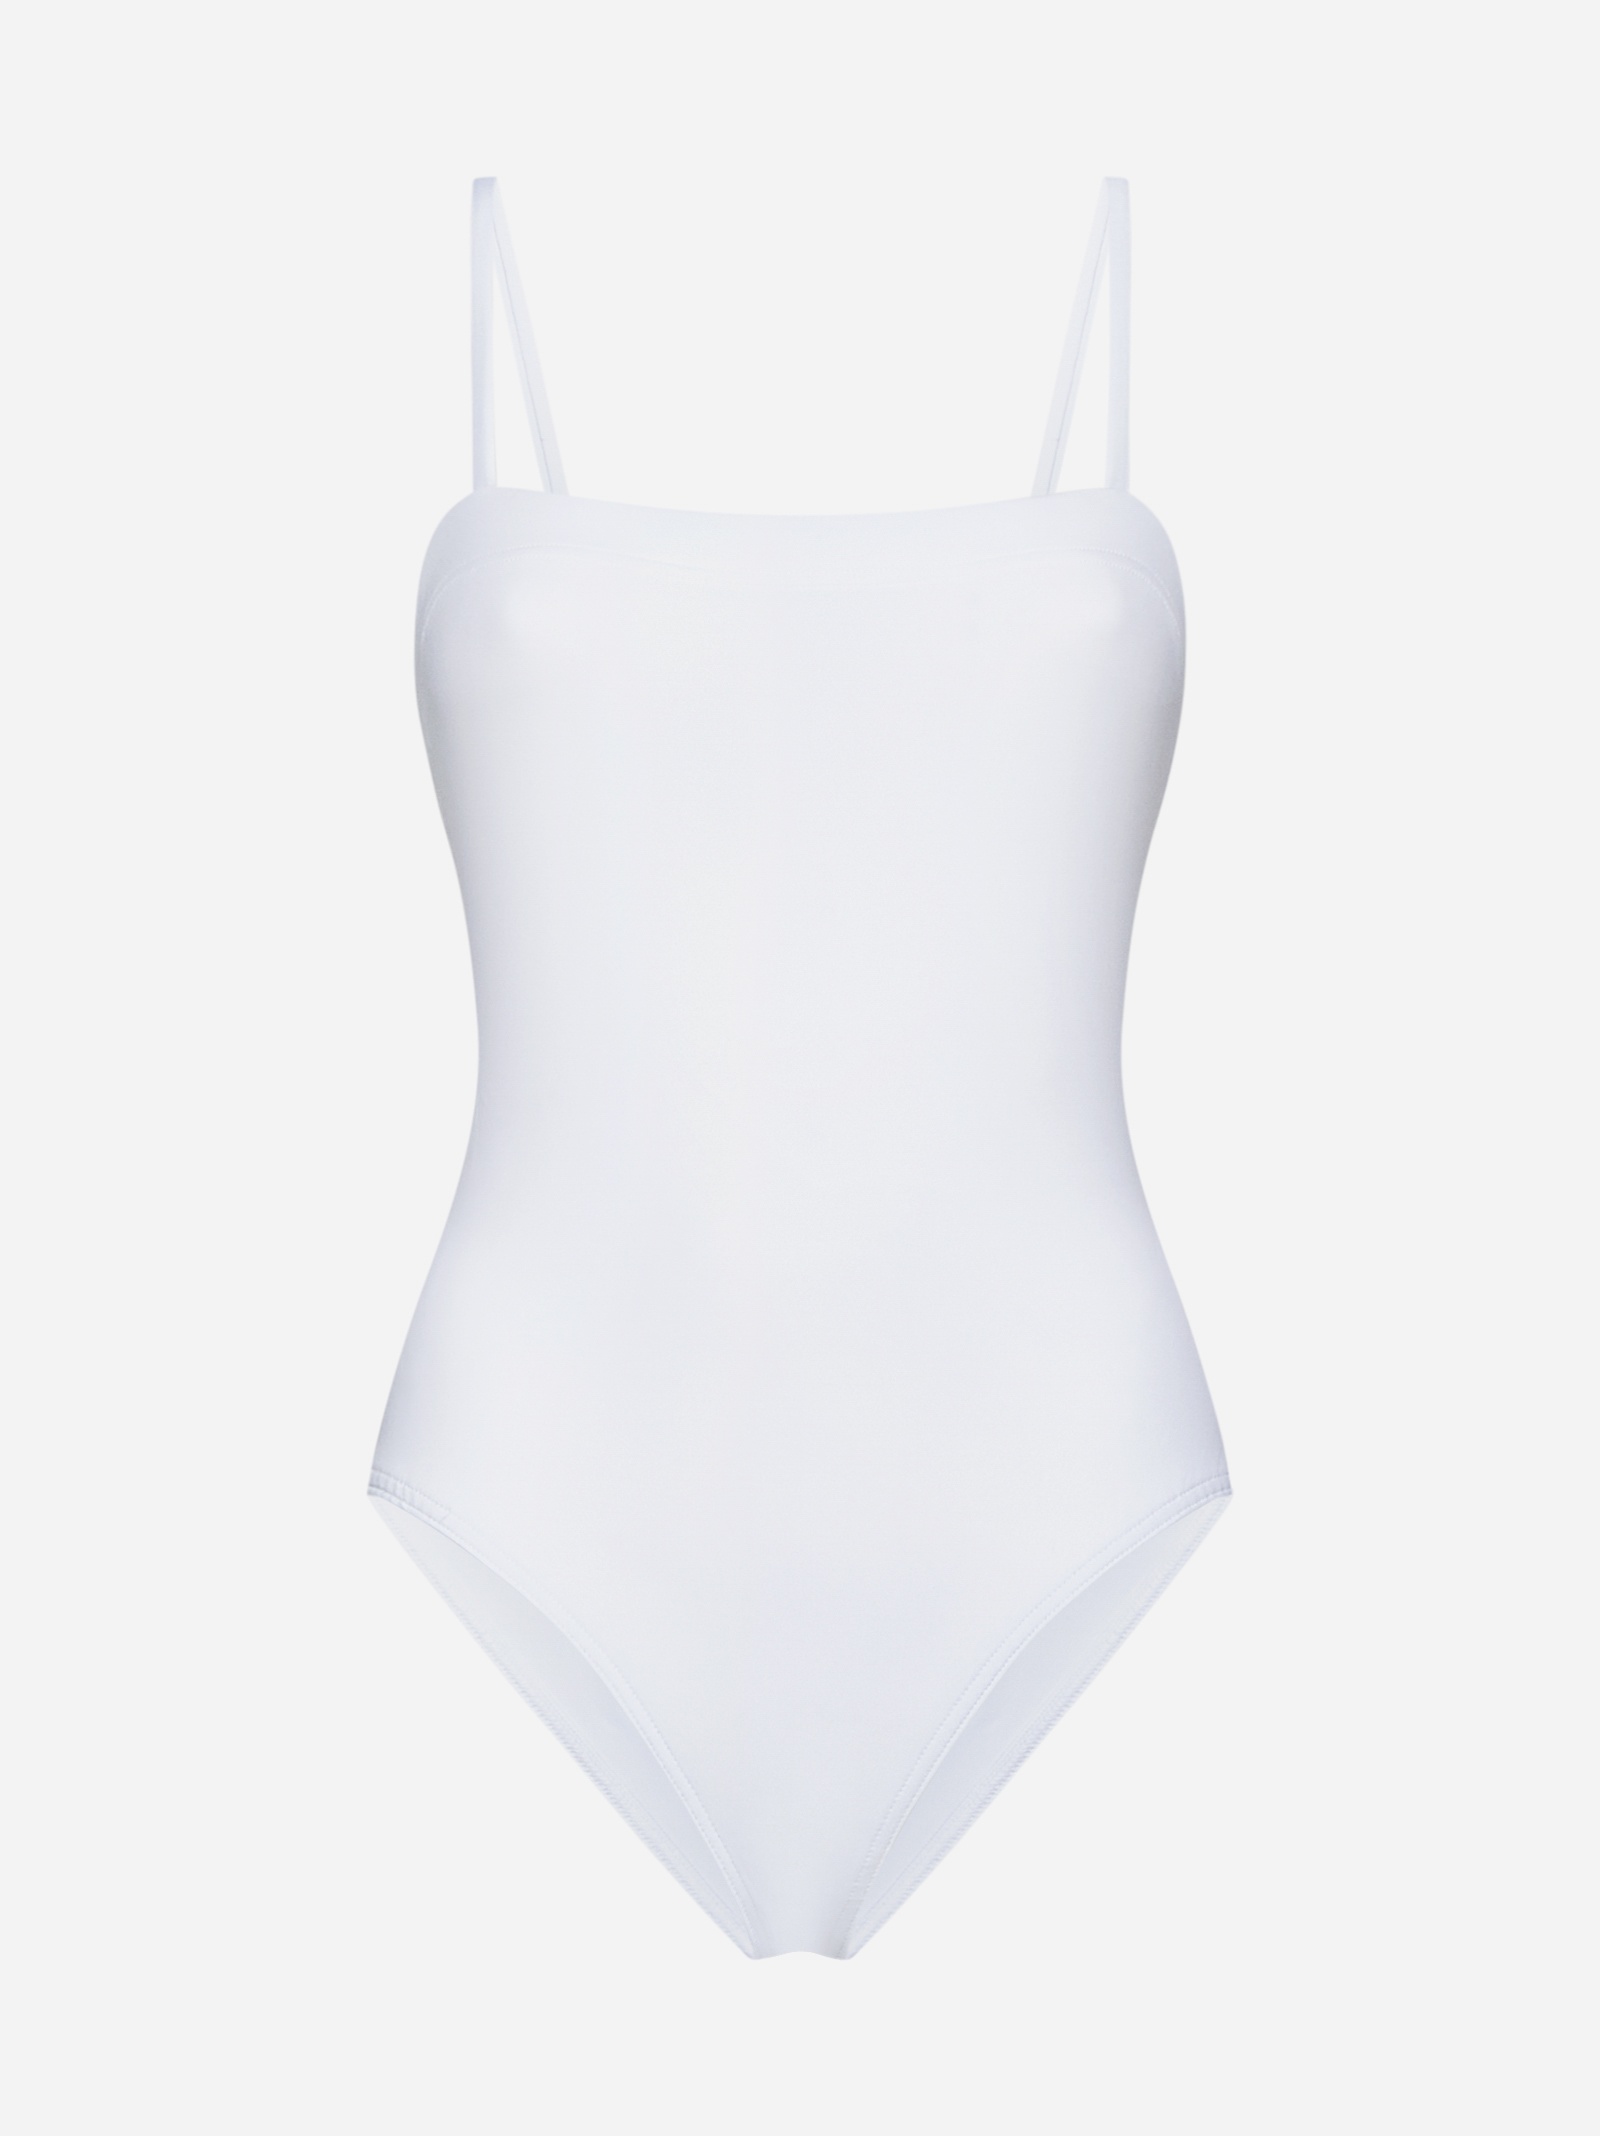 Aquarelle swimsuit - 1